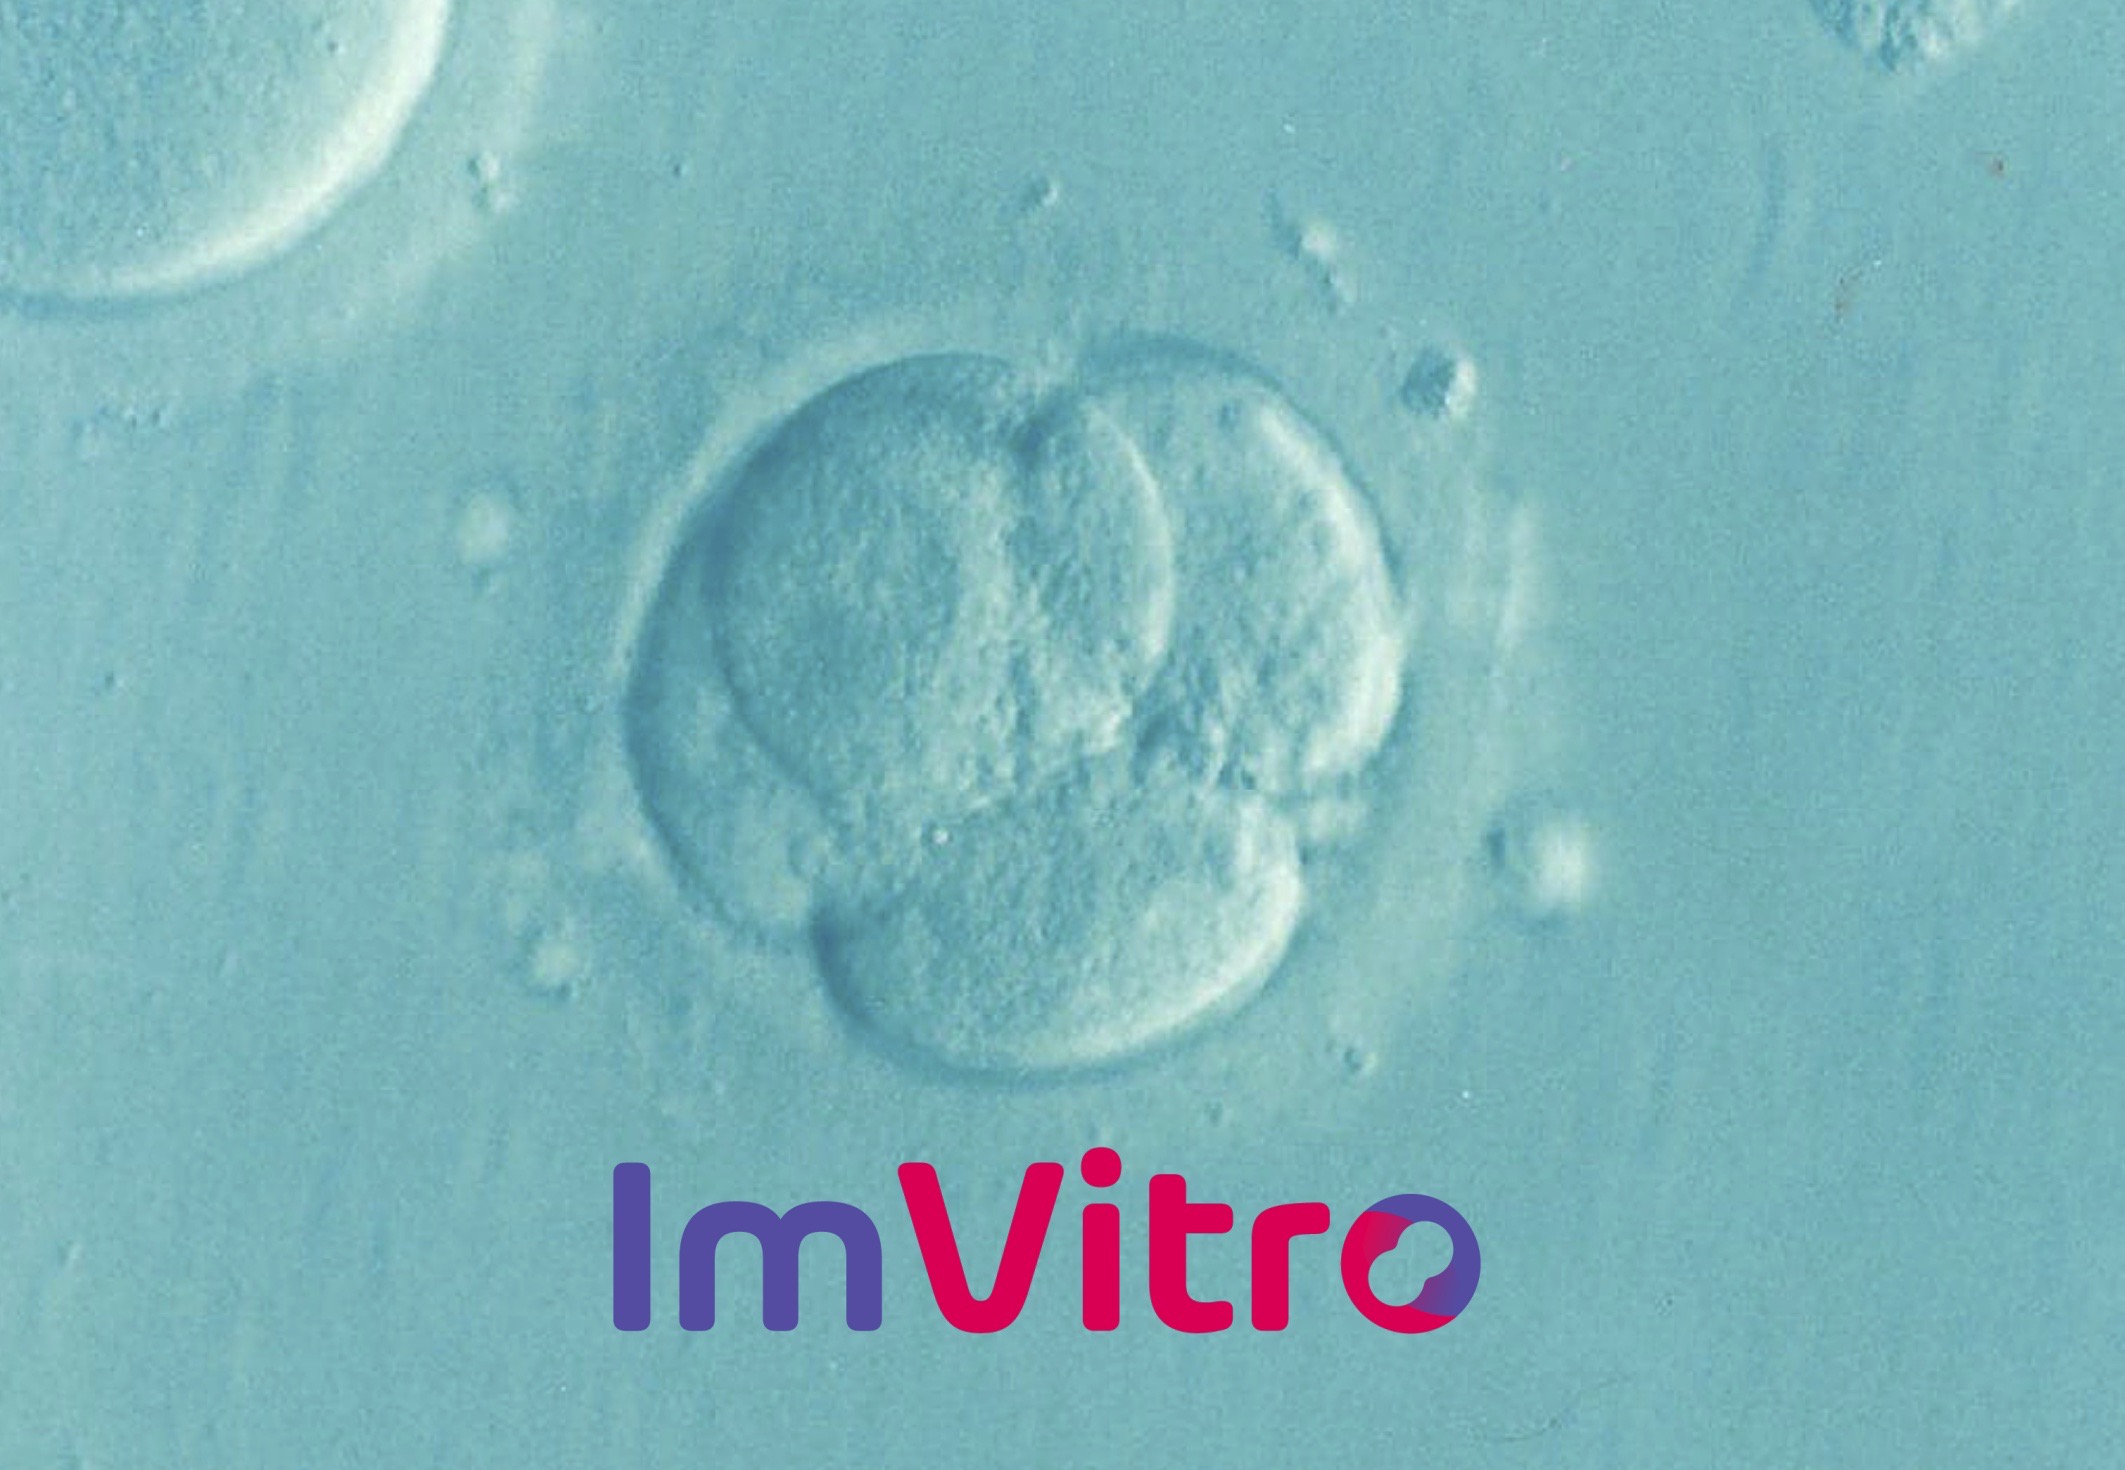 Event #2: AI & the future of in vitro fertilization